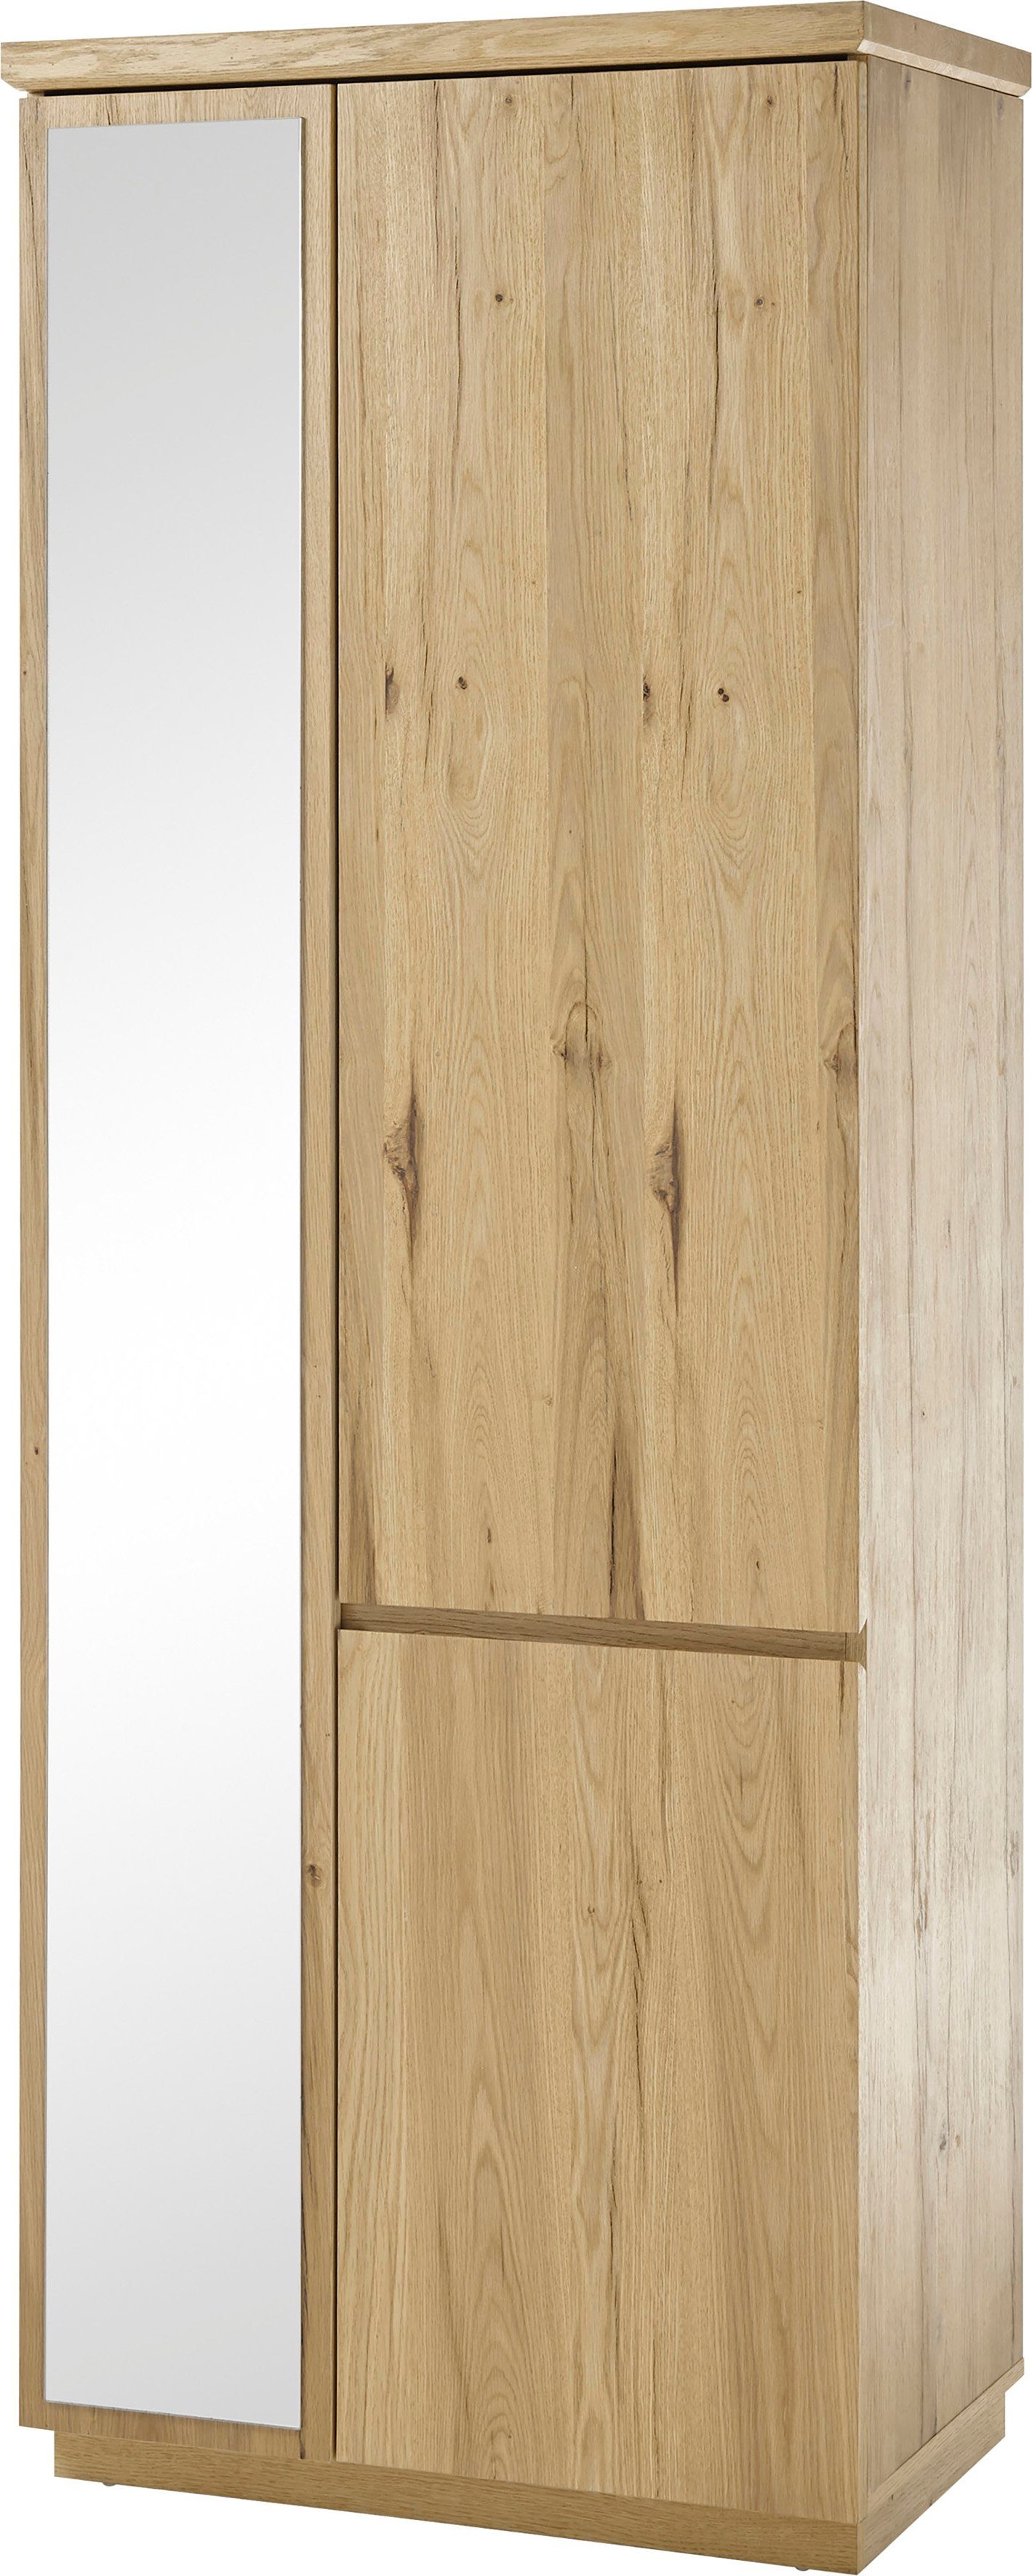 ca. 75 3 Garderobenschrank Yorkshire Garderobenhochschrank Türen mit Breite cm, MCA furniture